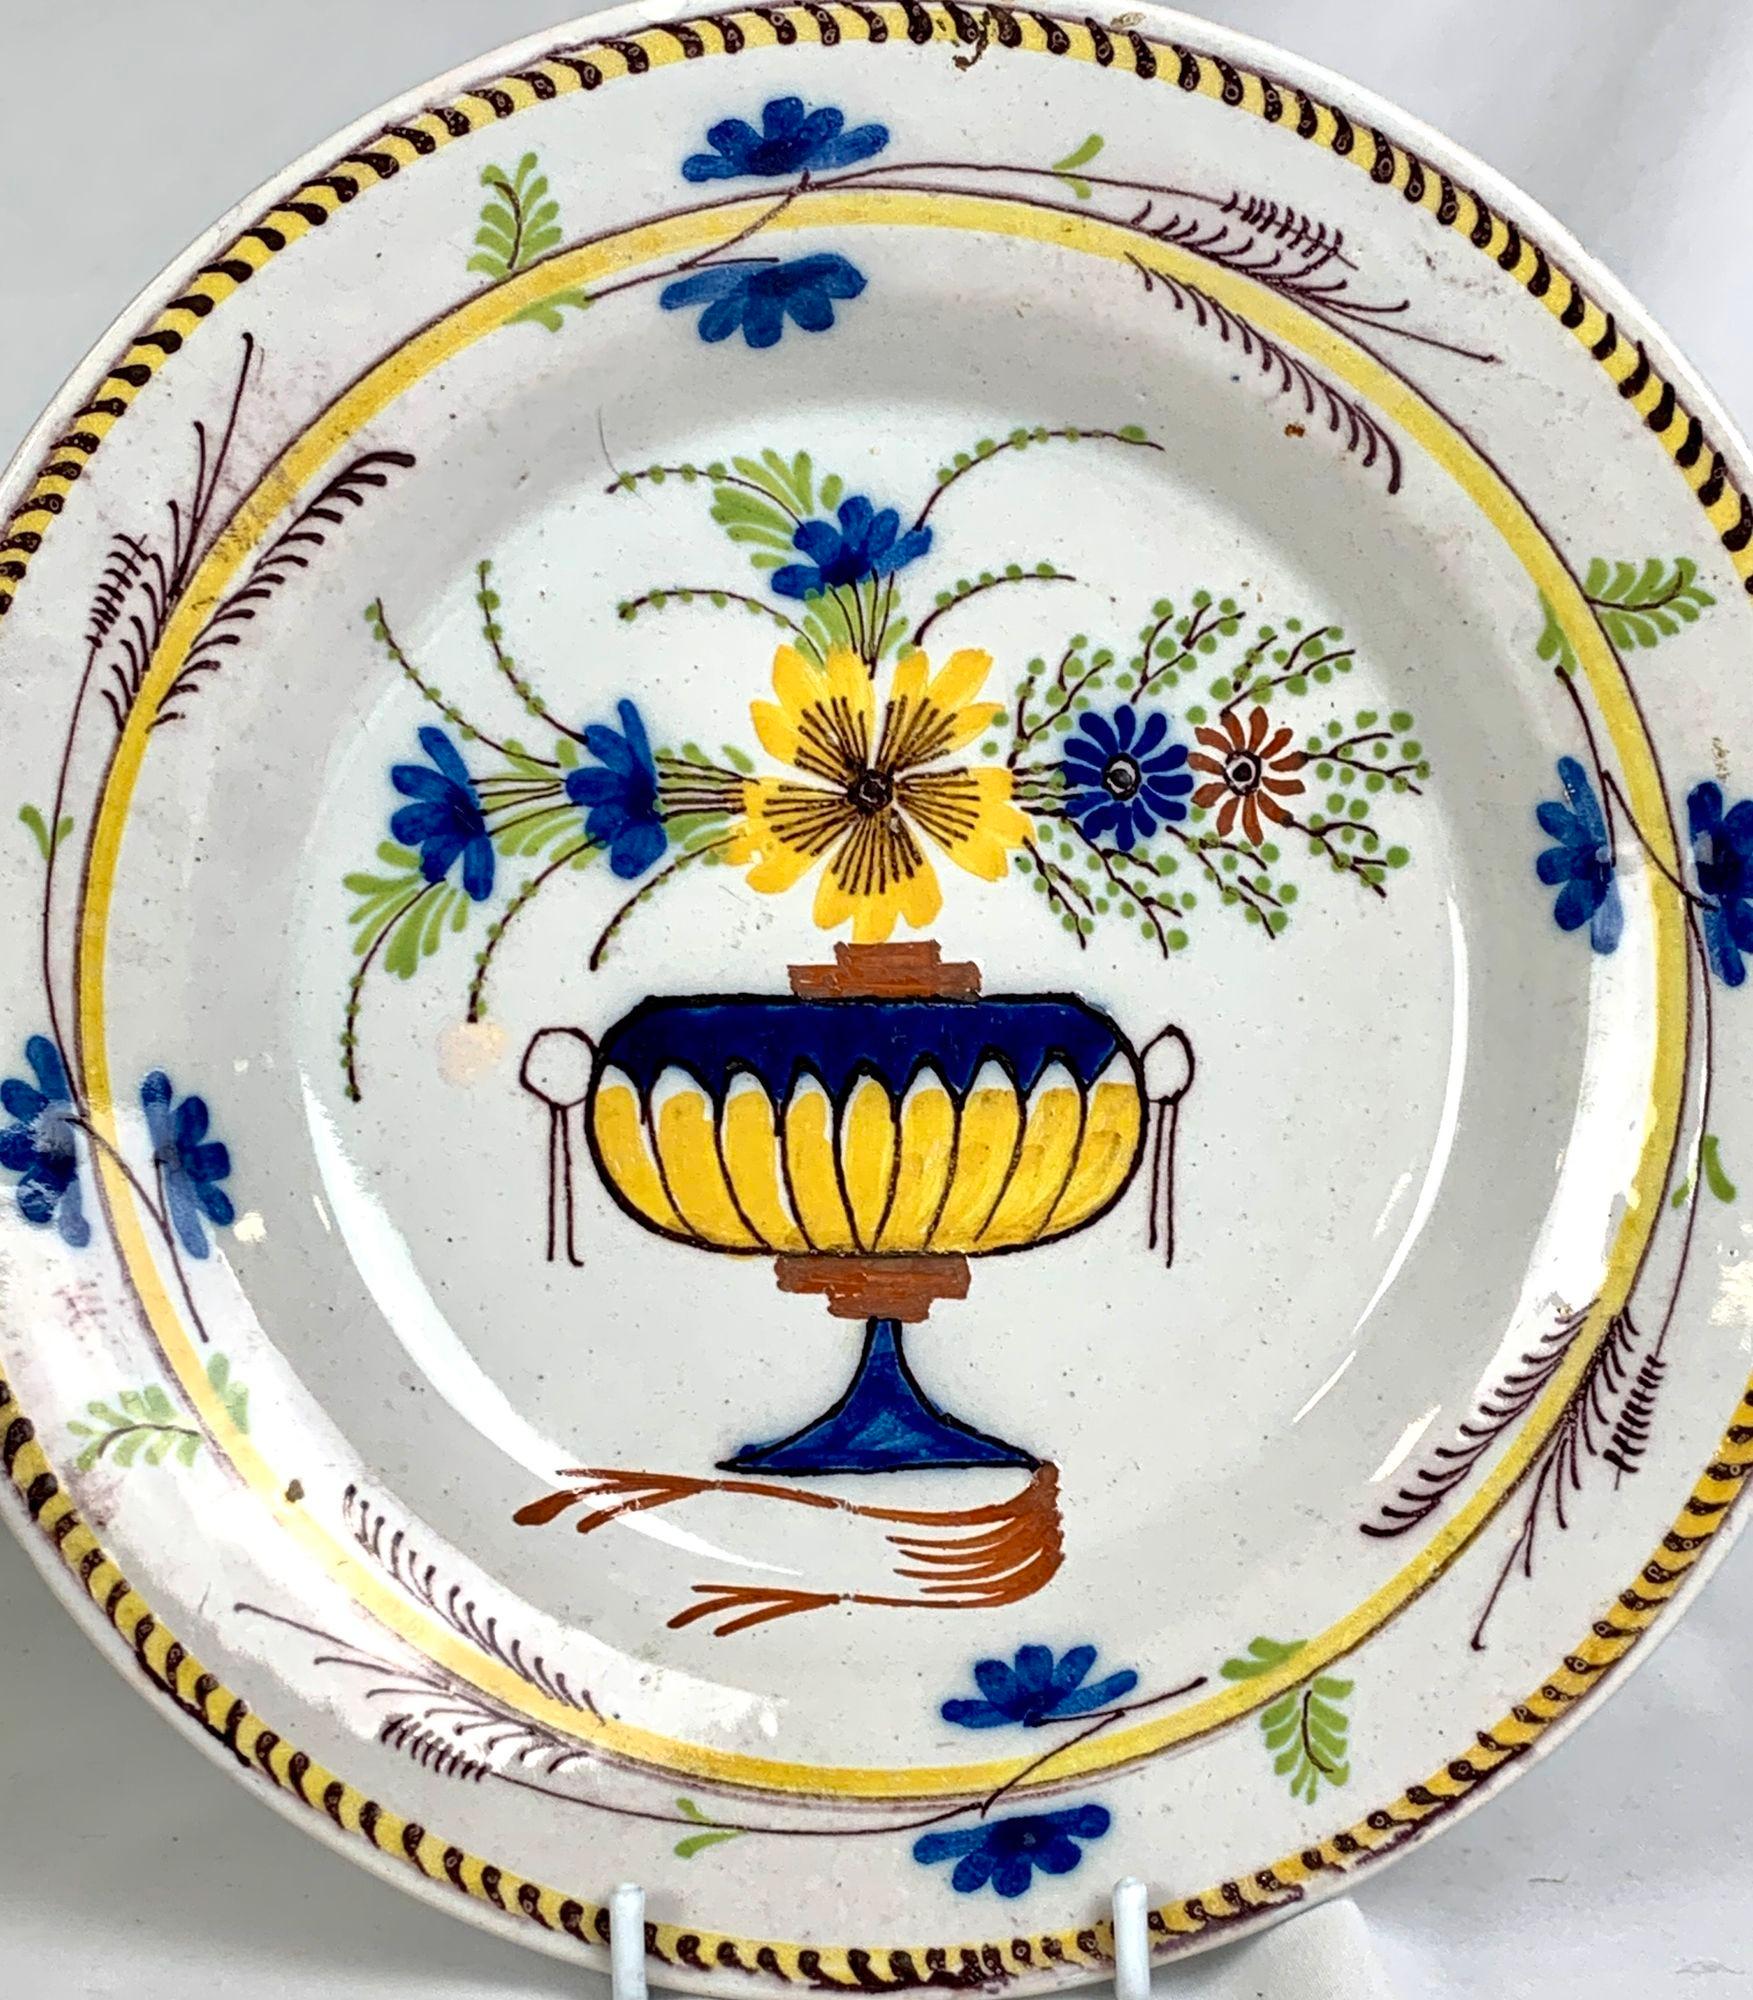 Dieser handbemalte Teller aus dem niederländischen Delft zeigt eine hübsche, mit Blumen gefüllte Vase, die mit leuchtenden Farben in Zitronengelb, Blau, Eisenrot und Violett bemalt ist.
Die leuchtend gelbe Blüte zieht die Aufmerksamkeit auf